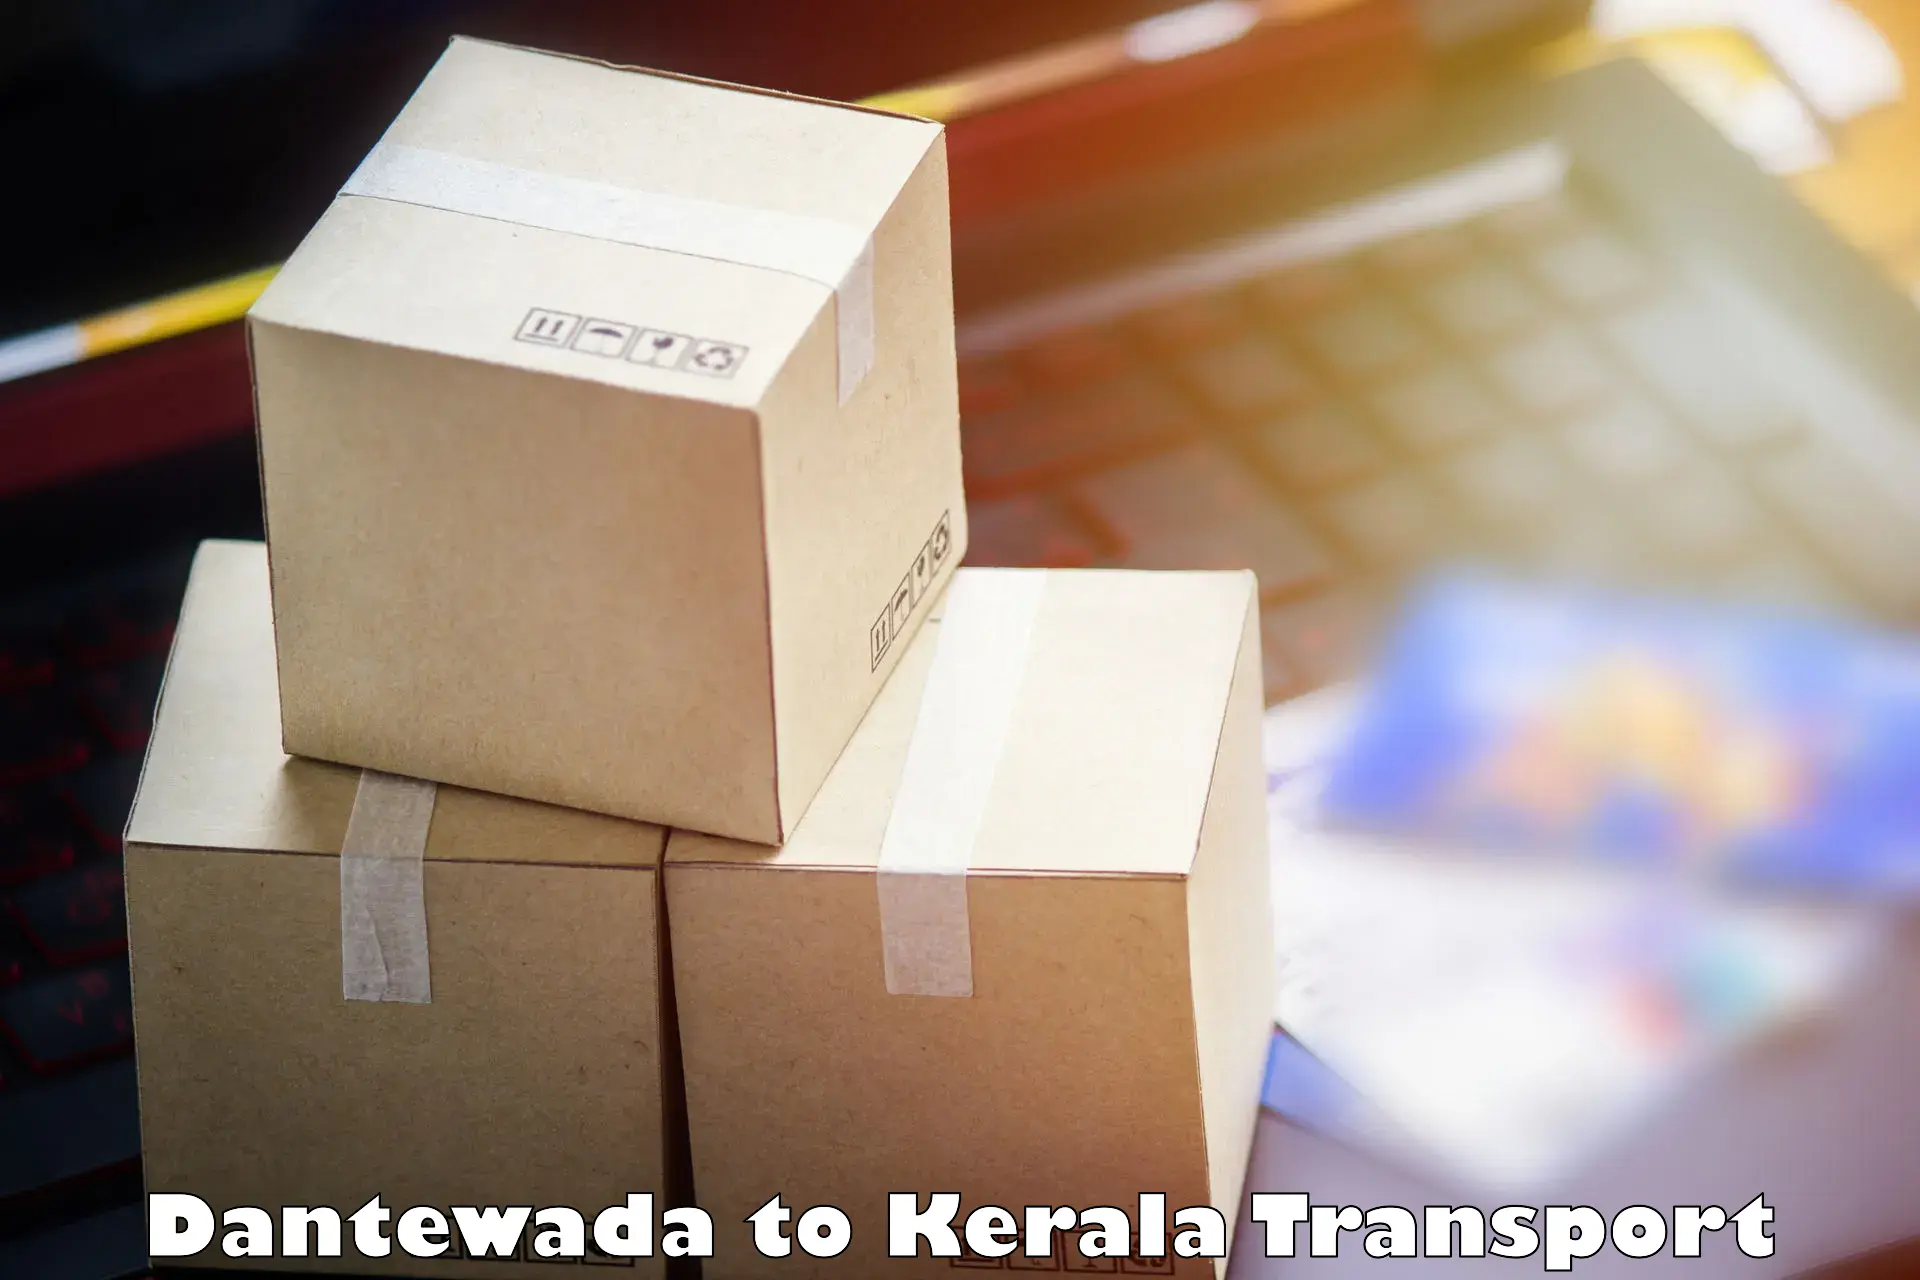 India truck logistics services Dantewada to Chengannur